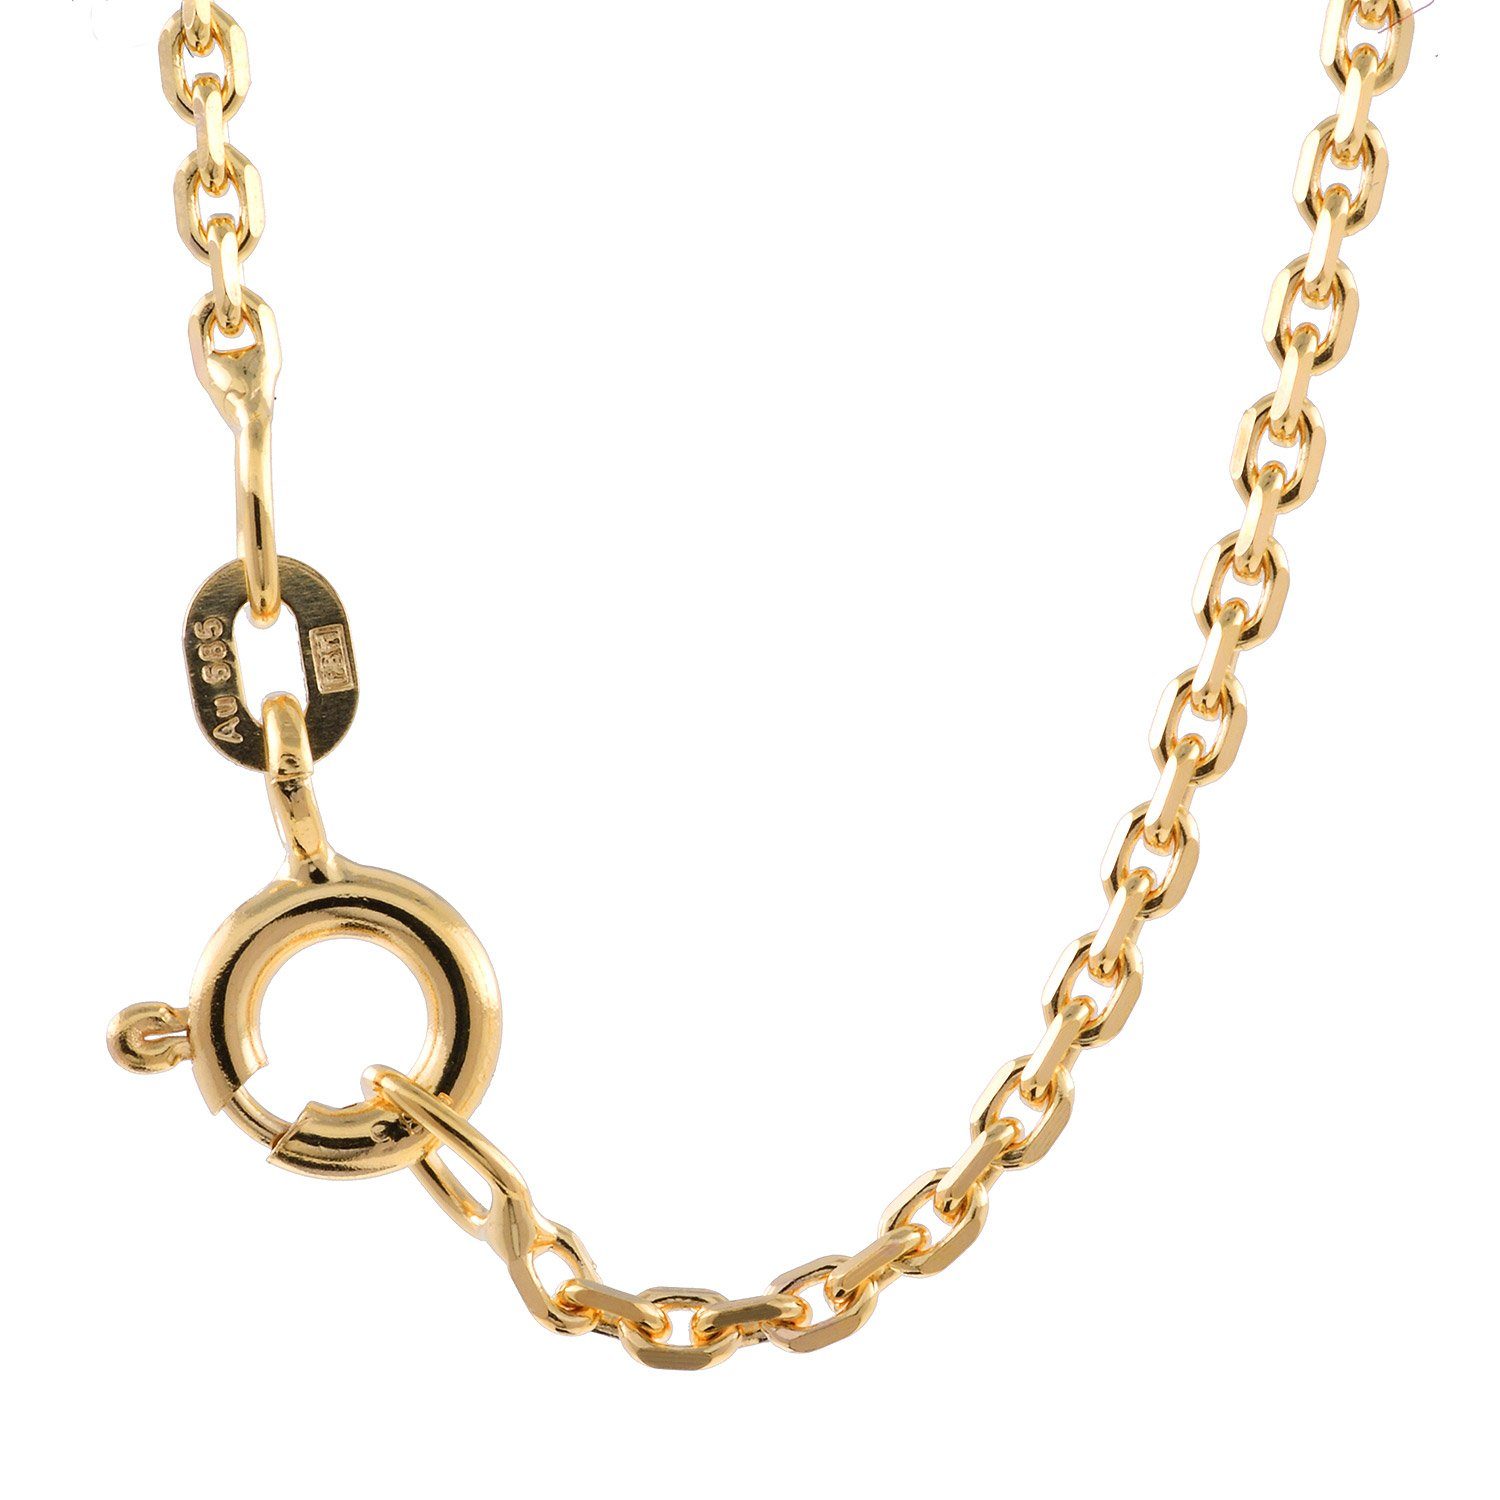 Herren Schmuck HOPLO Goldkette 1,7 mm 45 cm 585 - 14 Karat Gold Halskette Ankerkette diamantiert massiv Gold hochwertige Goldket